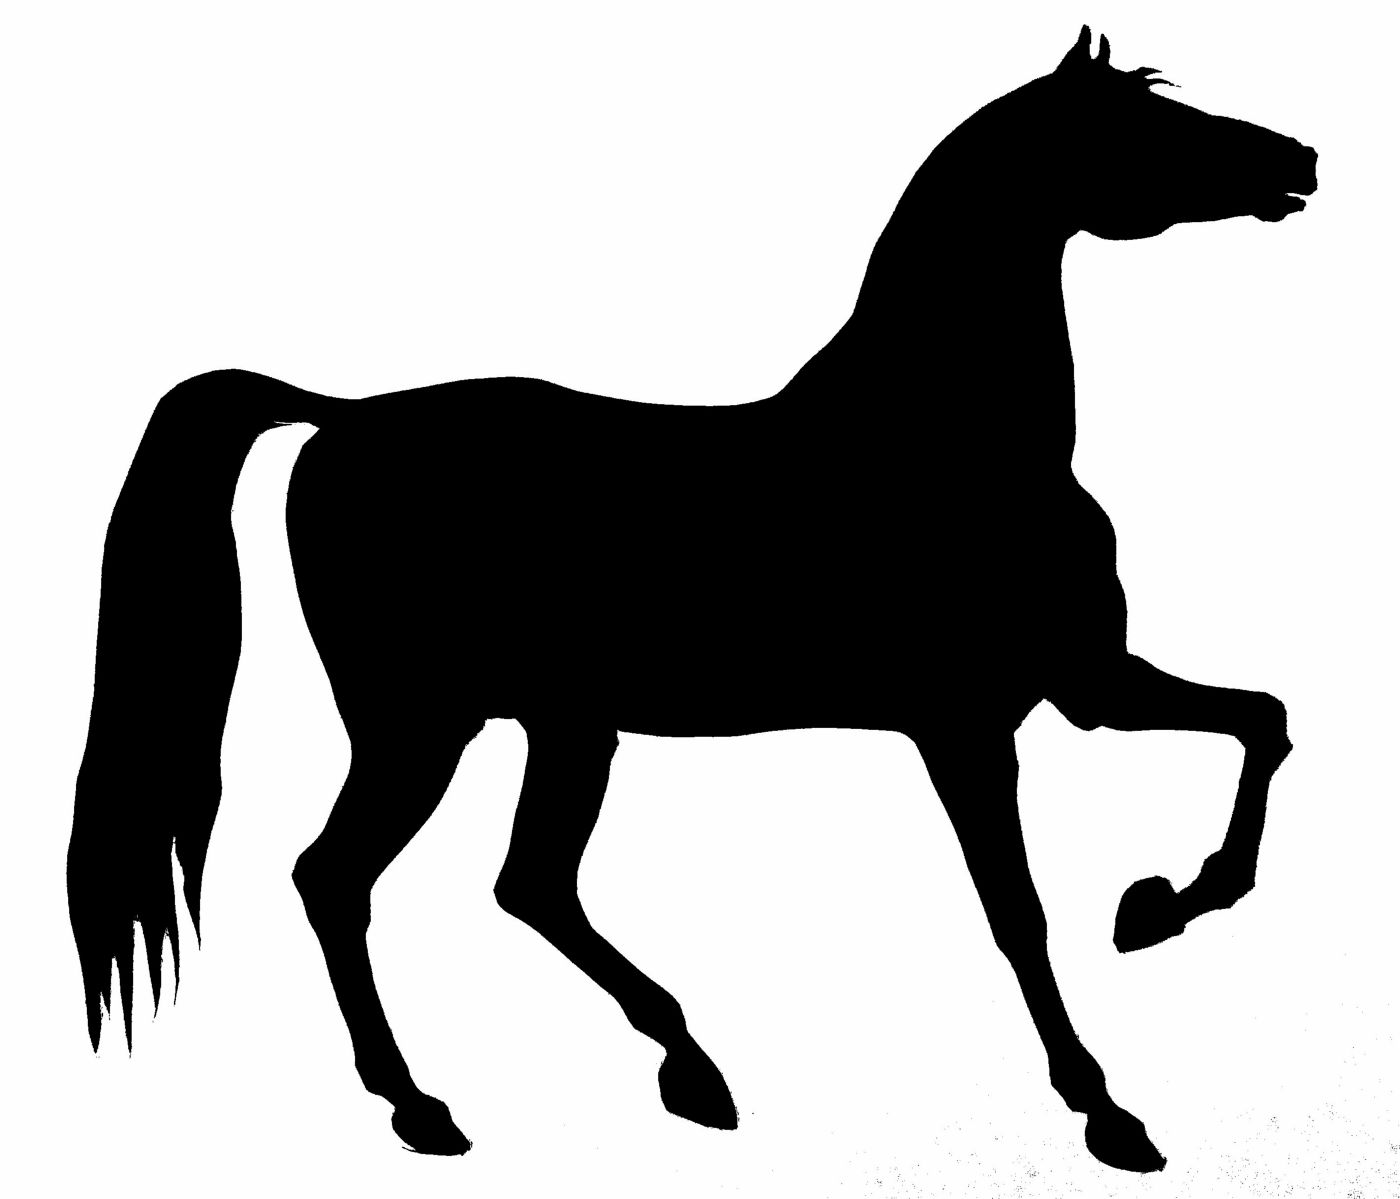 saraccino-horse-silhouette-stencil